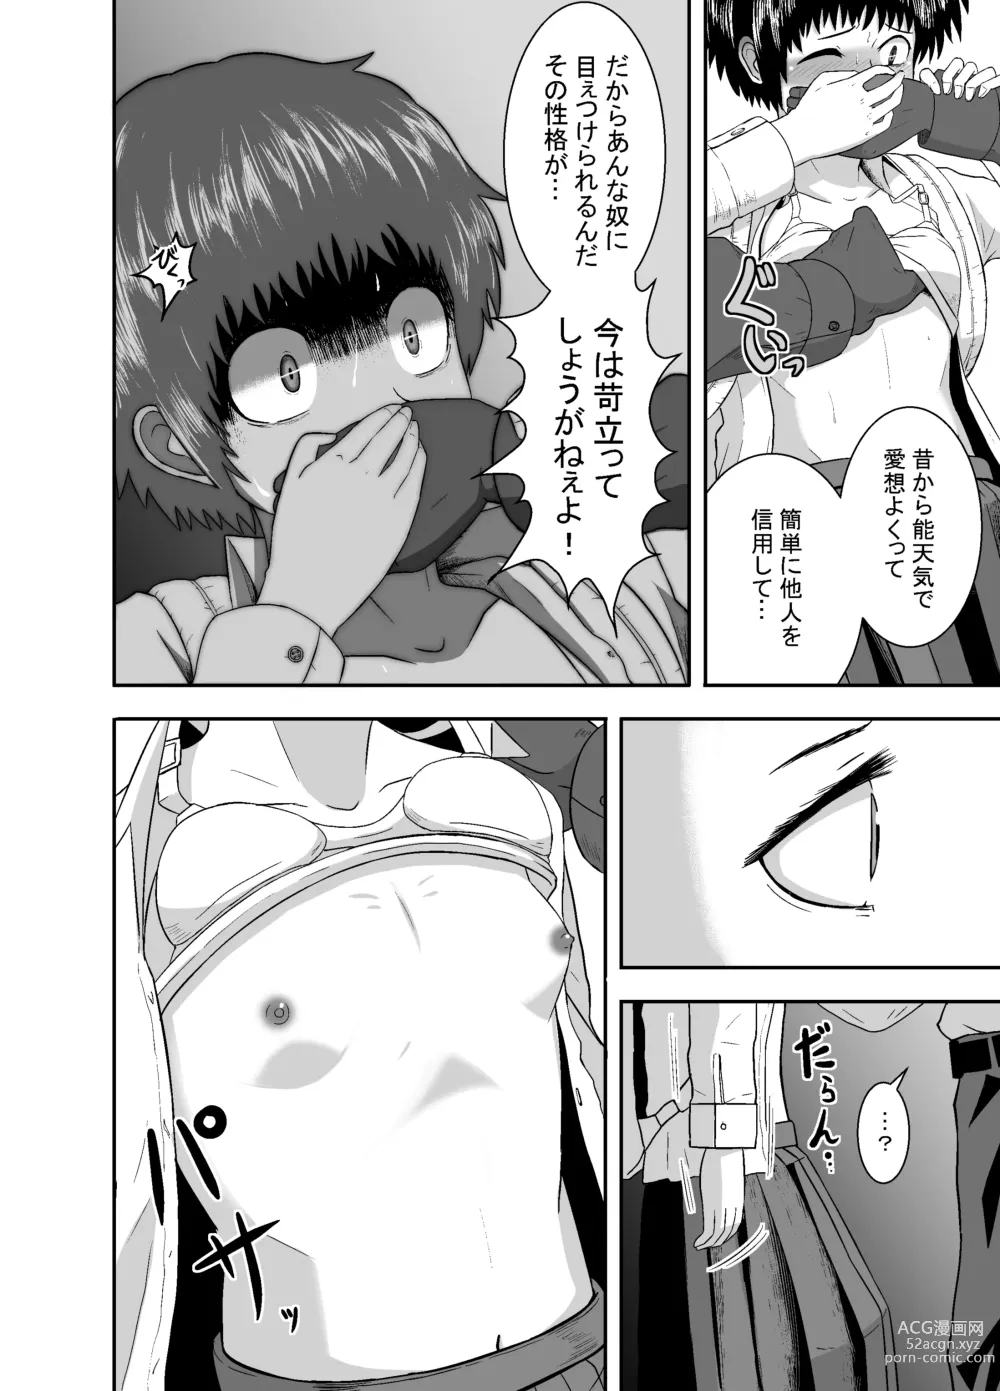 Page 23 of doujinshi Kimi ga Yarareru Kurai nara ~Genkikko Crisis~